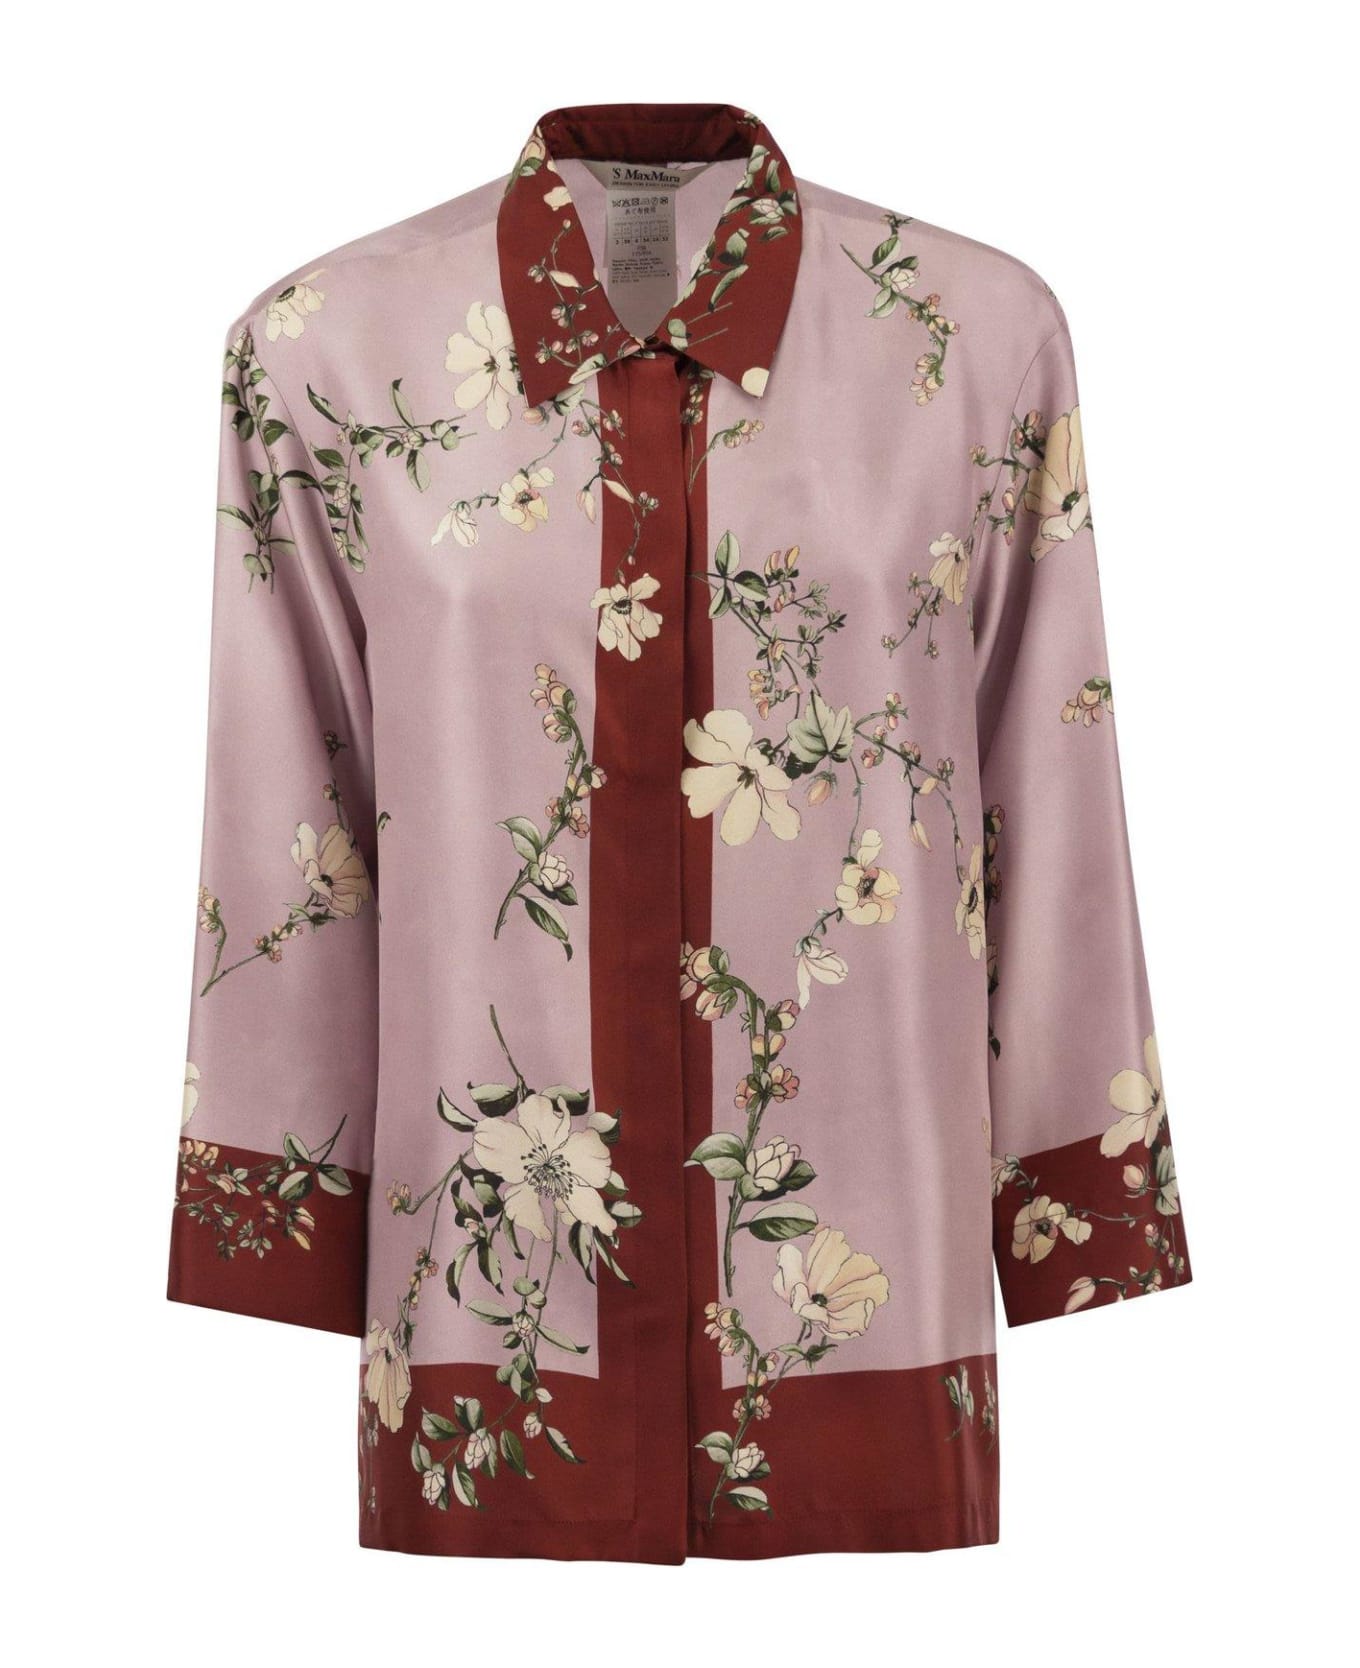 'S Max Mara Floral Printed Long-sleeved Shirt - Rosa/rosso シャツ